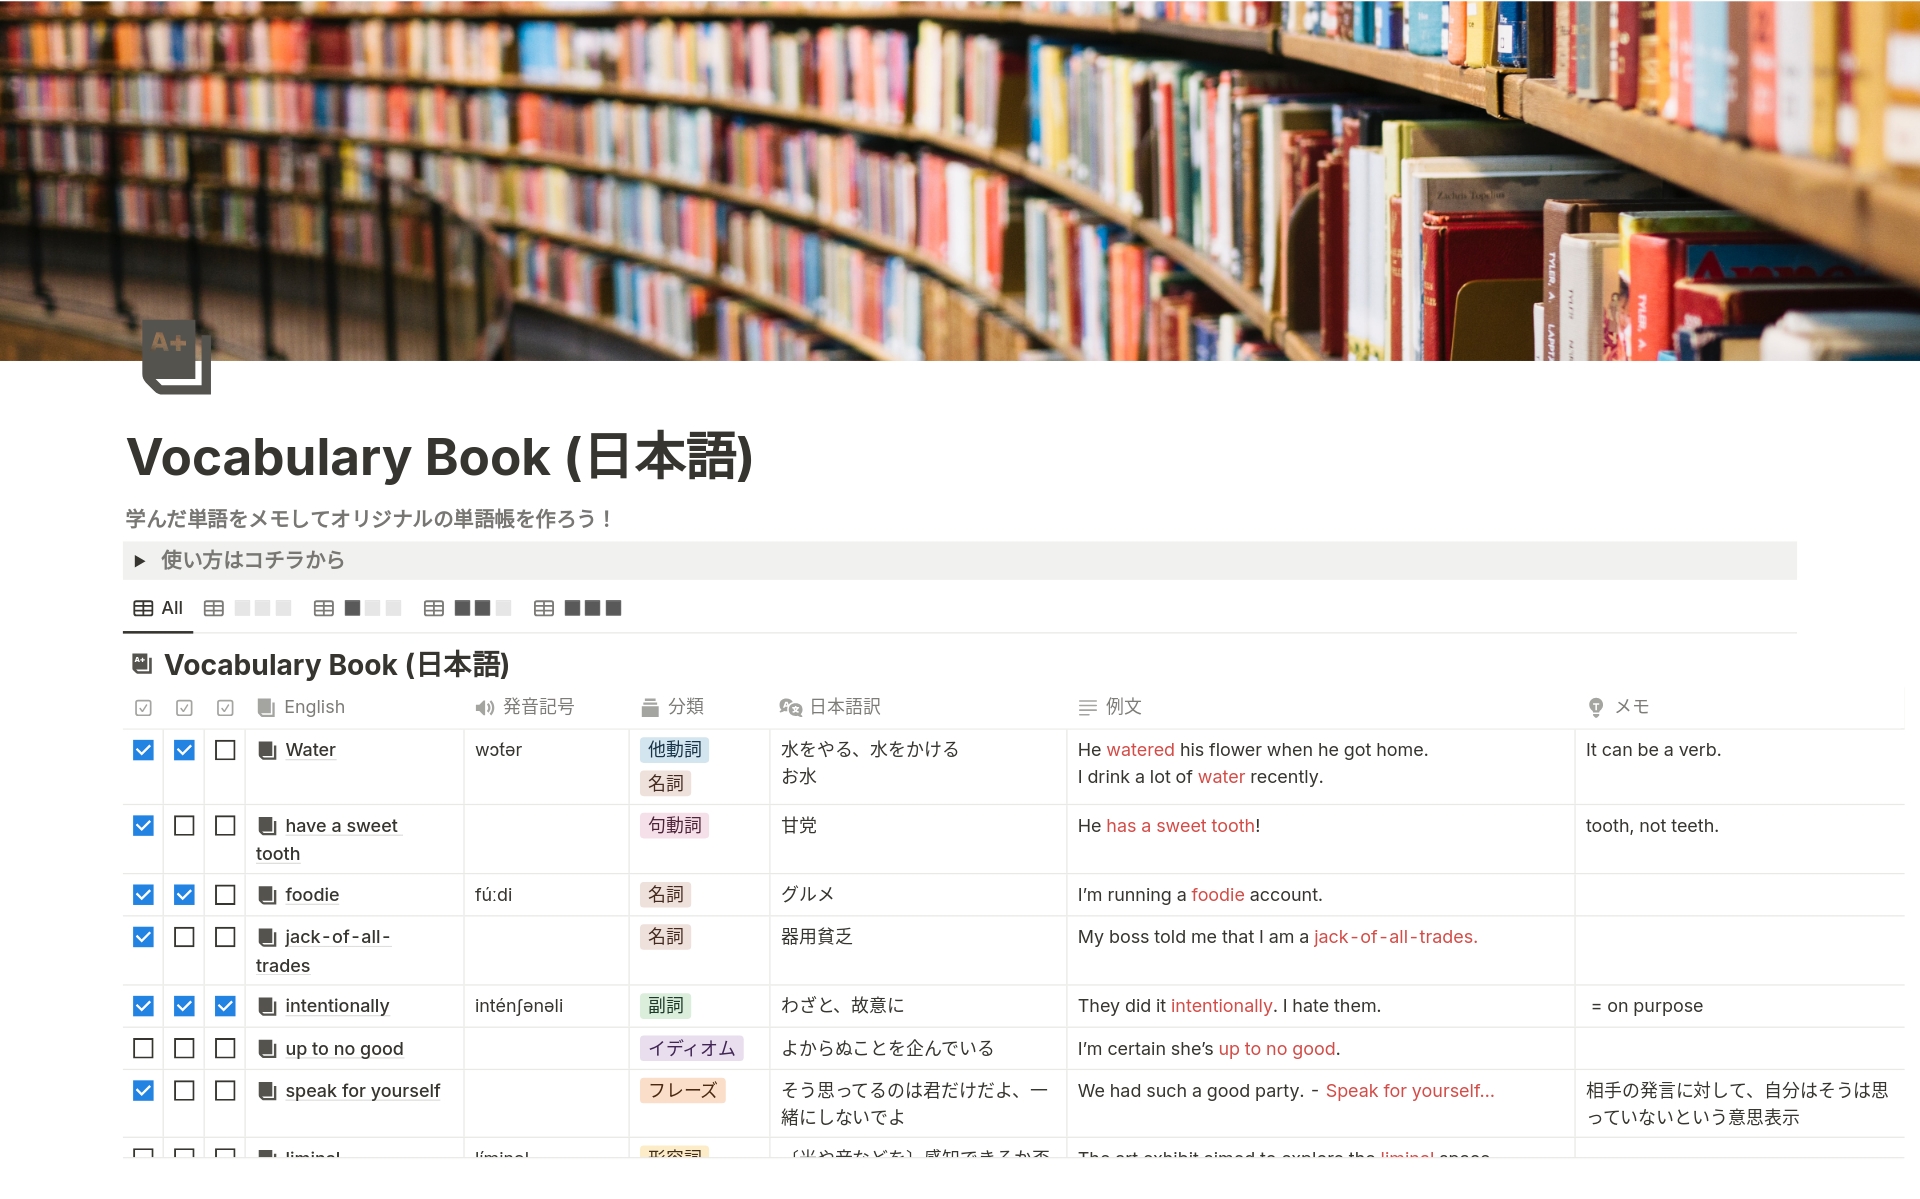 Vocabulary Book (日本語)のテンプレートのプレビュー